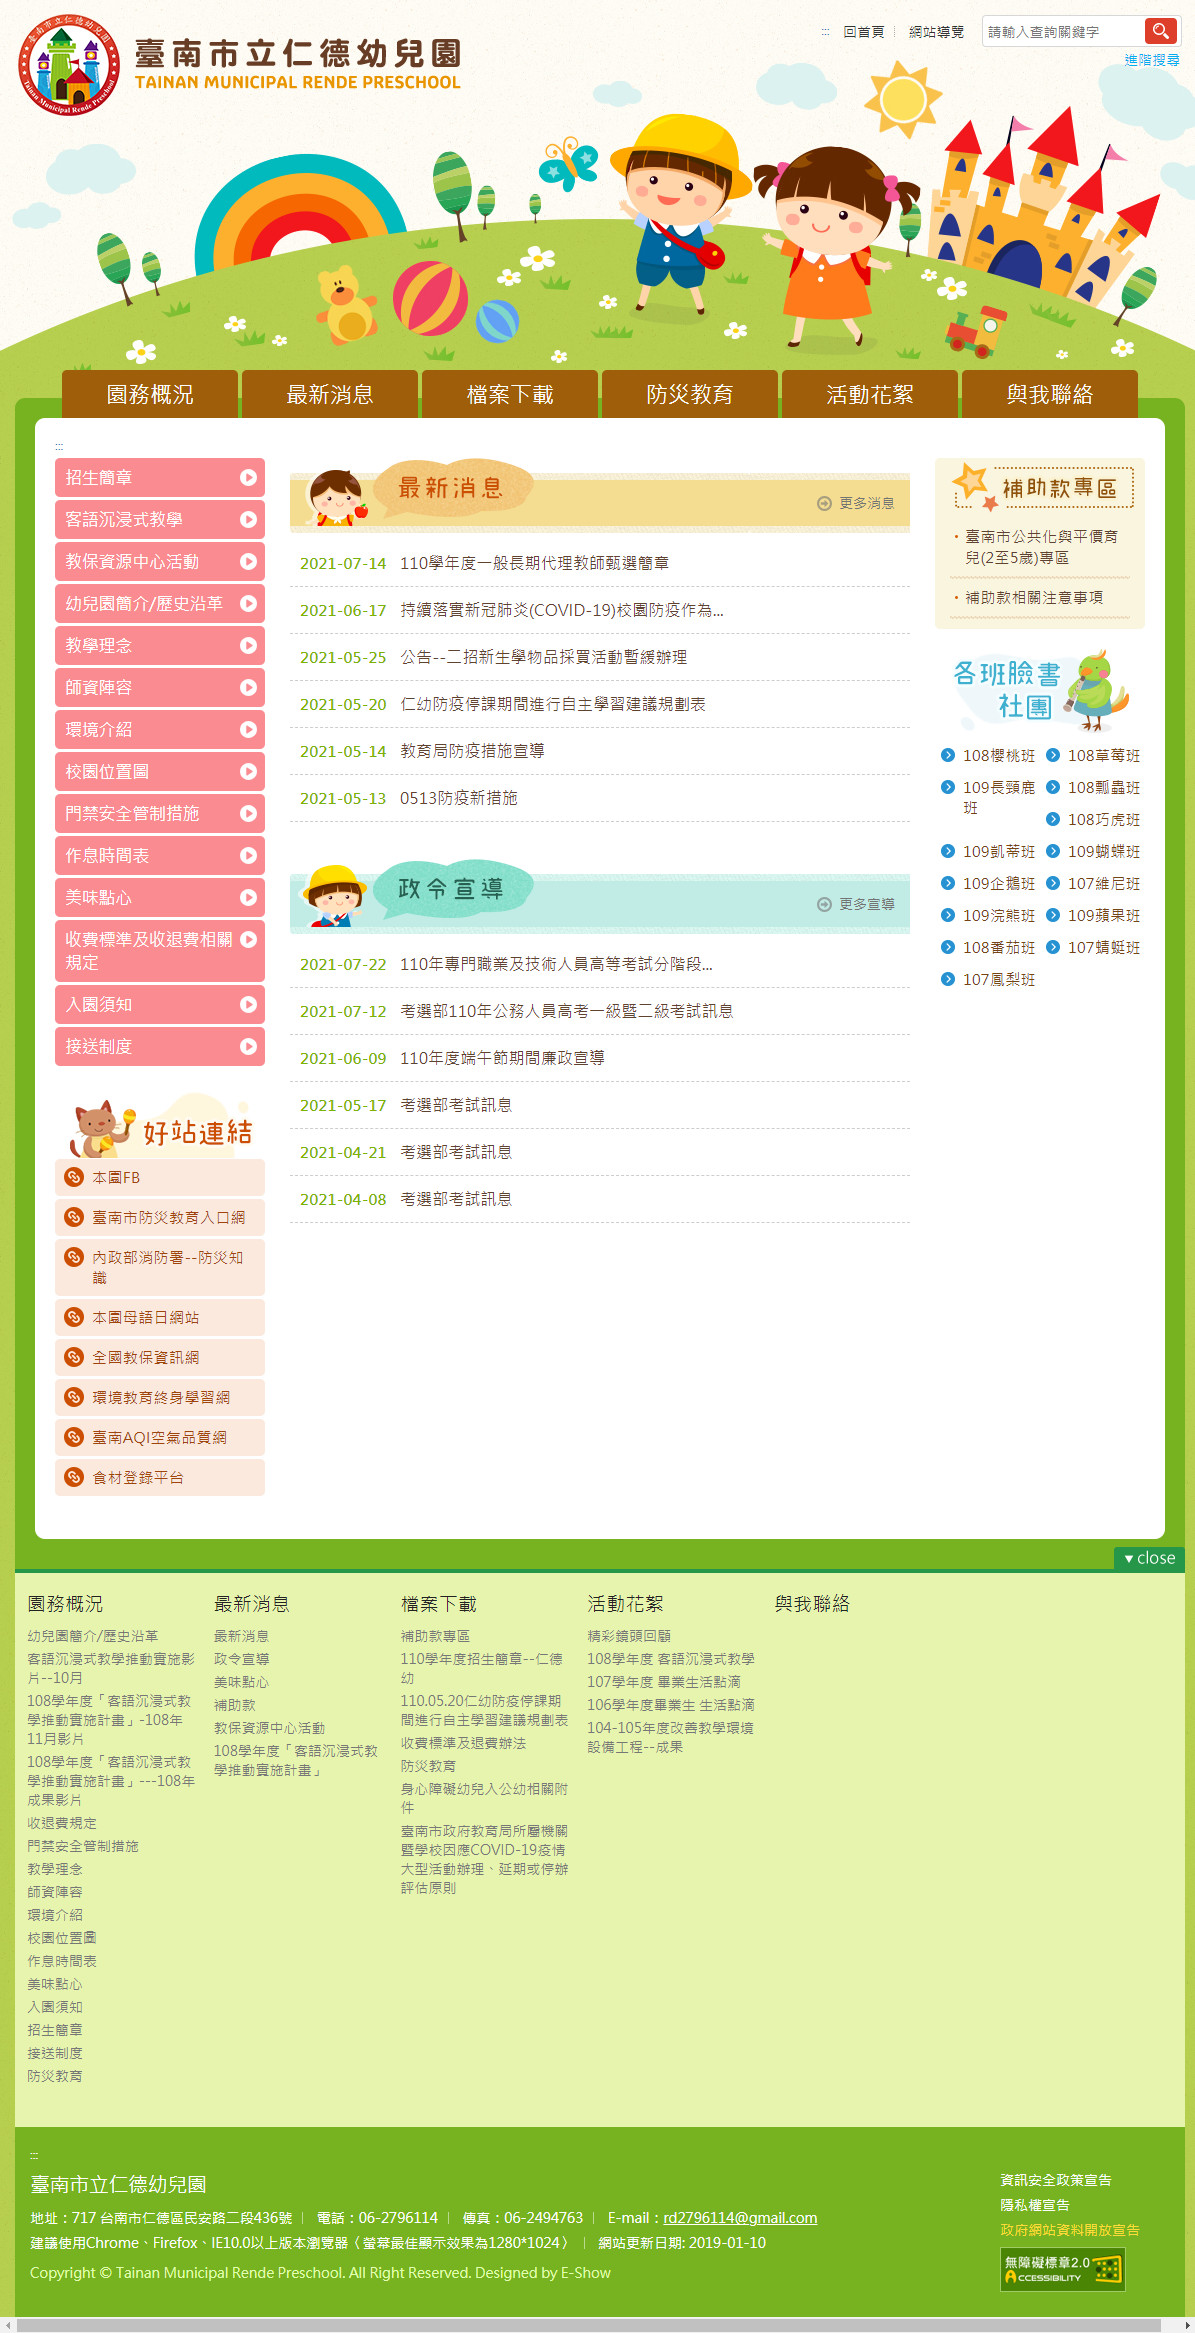 臺南市立仁德幼兒園 幼兒園響應式網站設計
網站設計